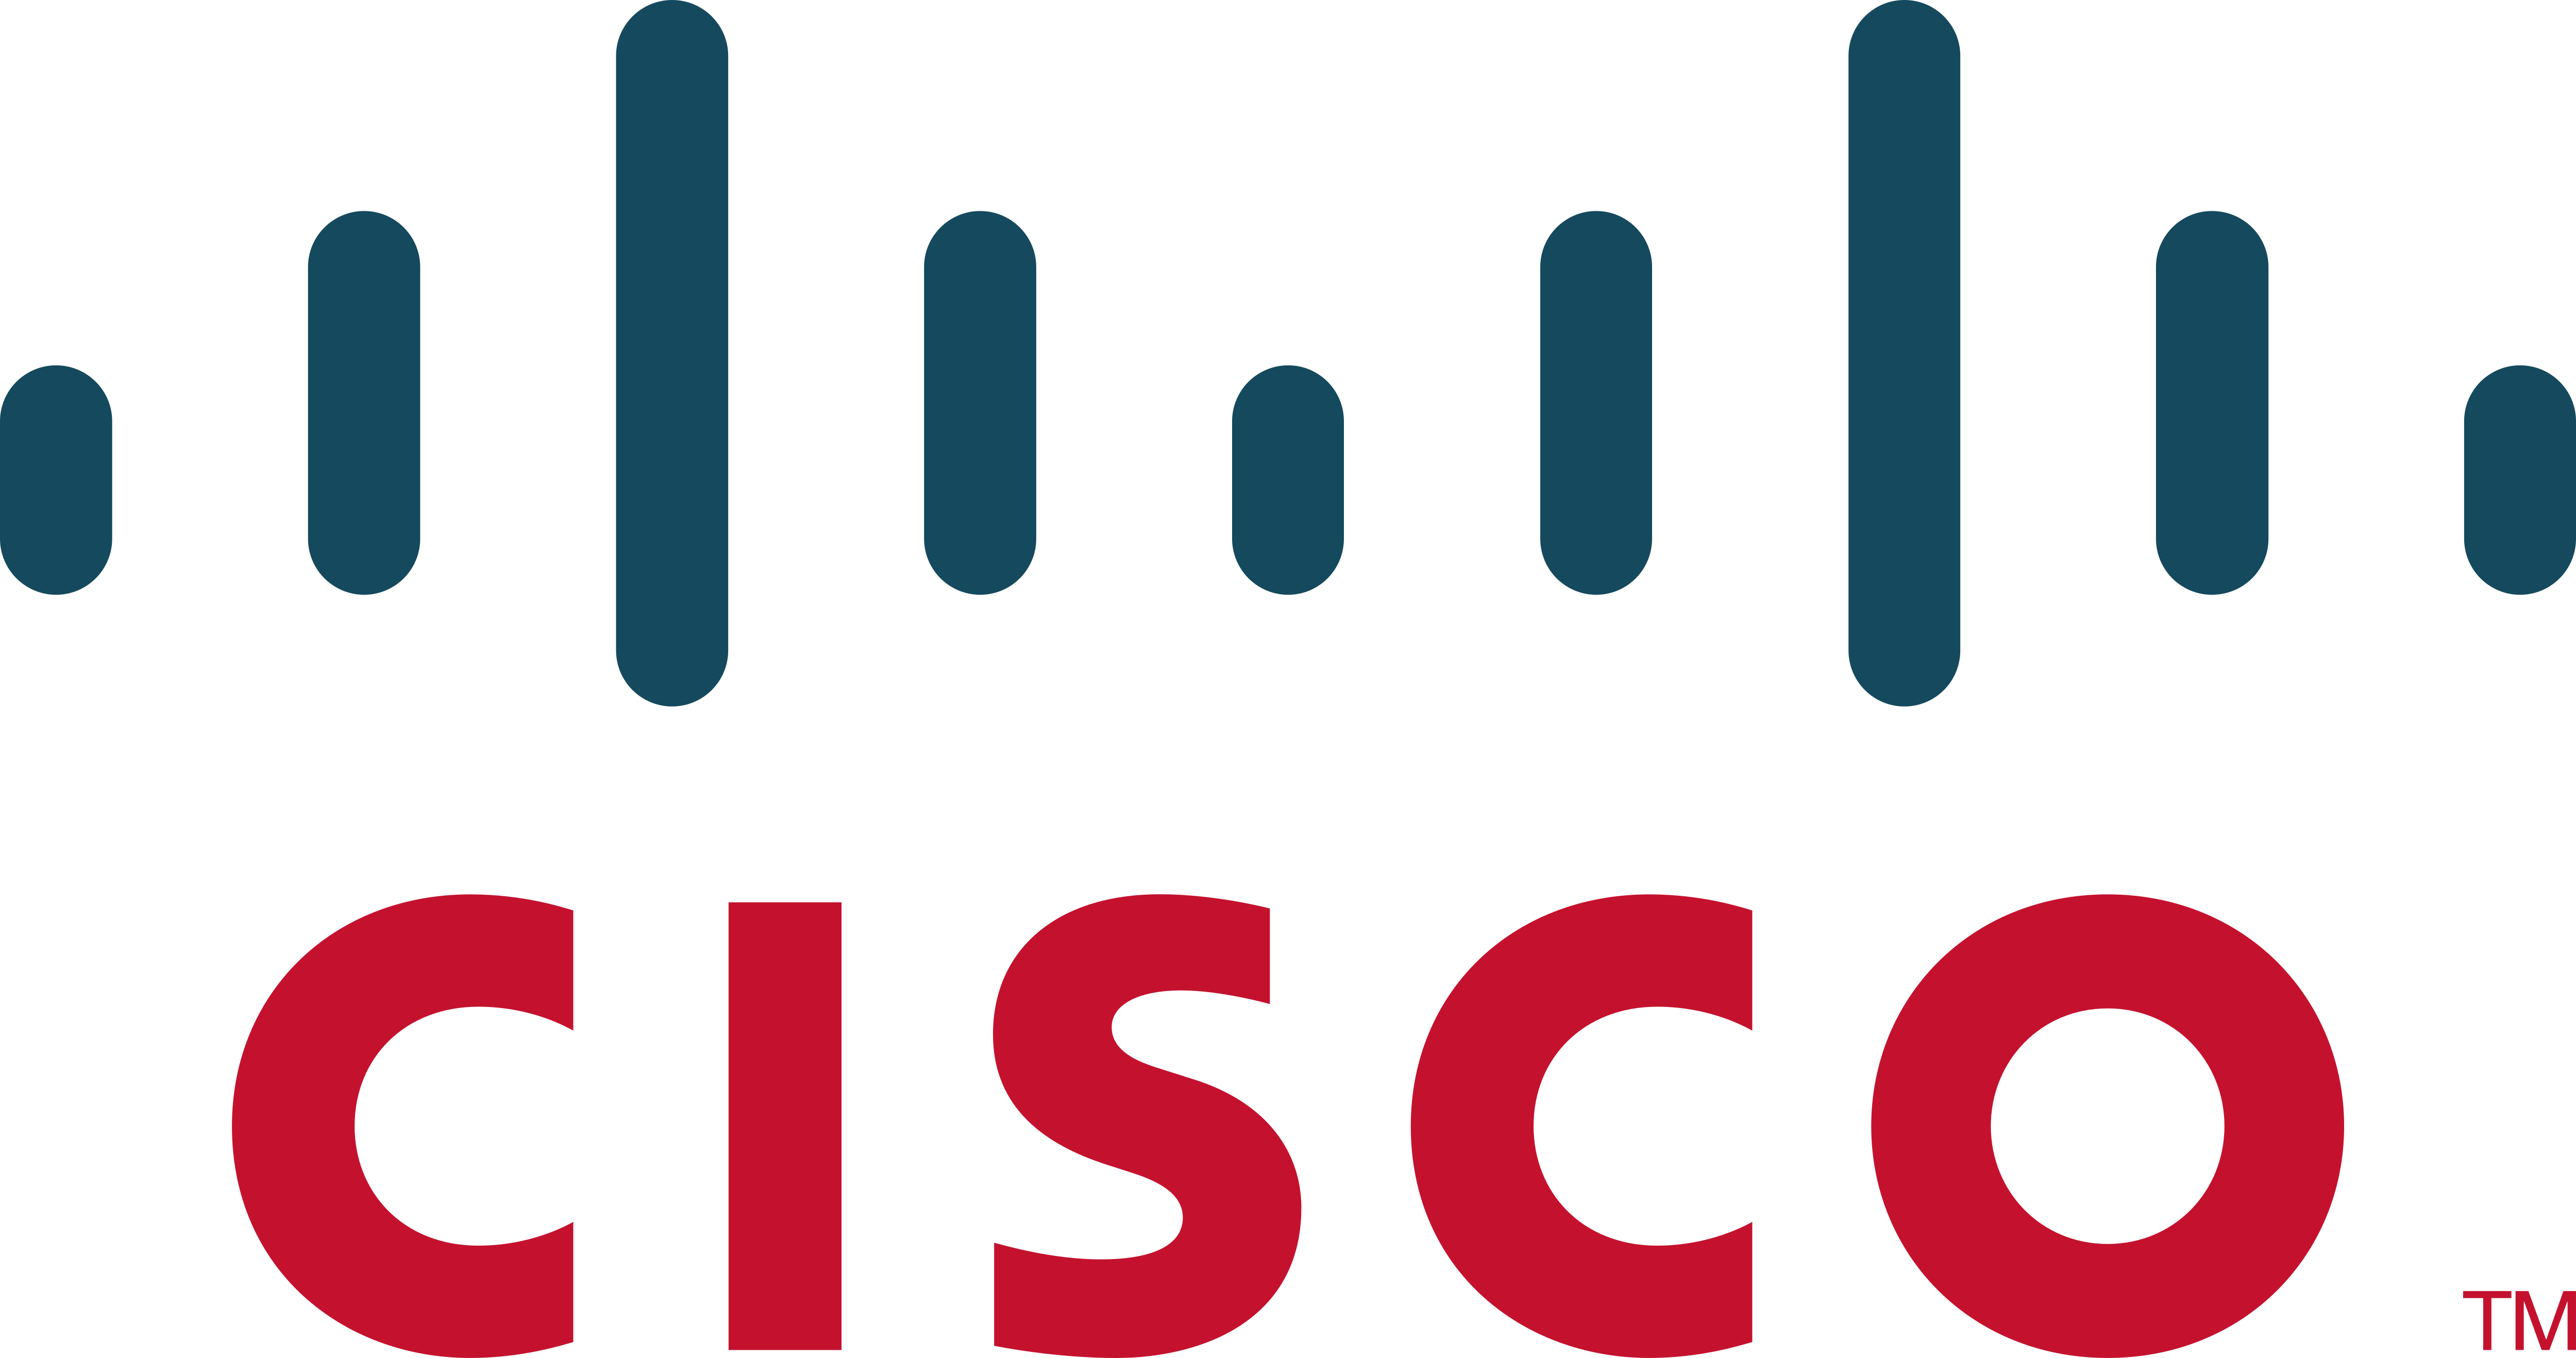 cisco logo 1 - Cisco Systems Logo